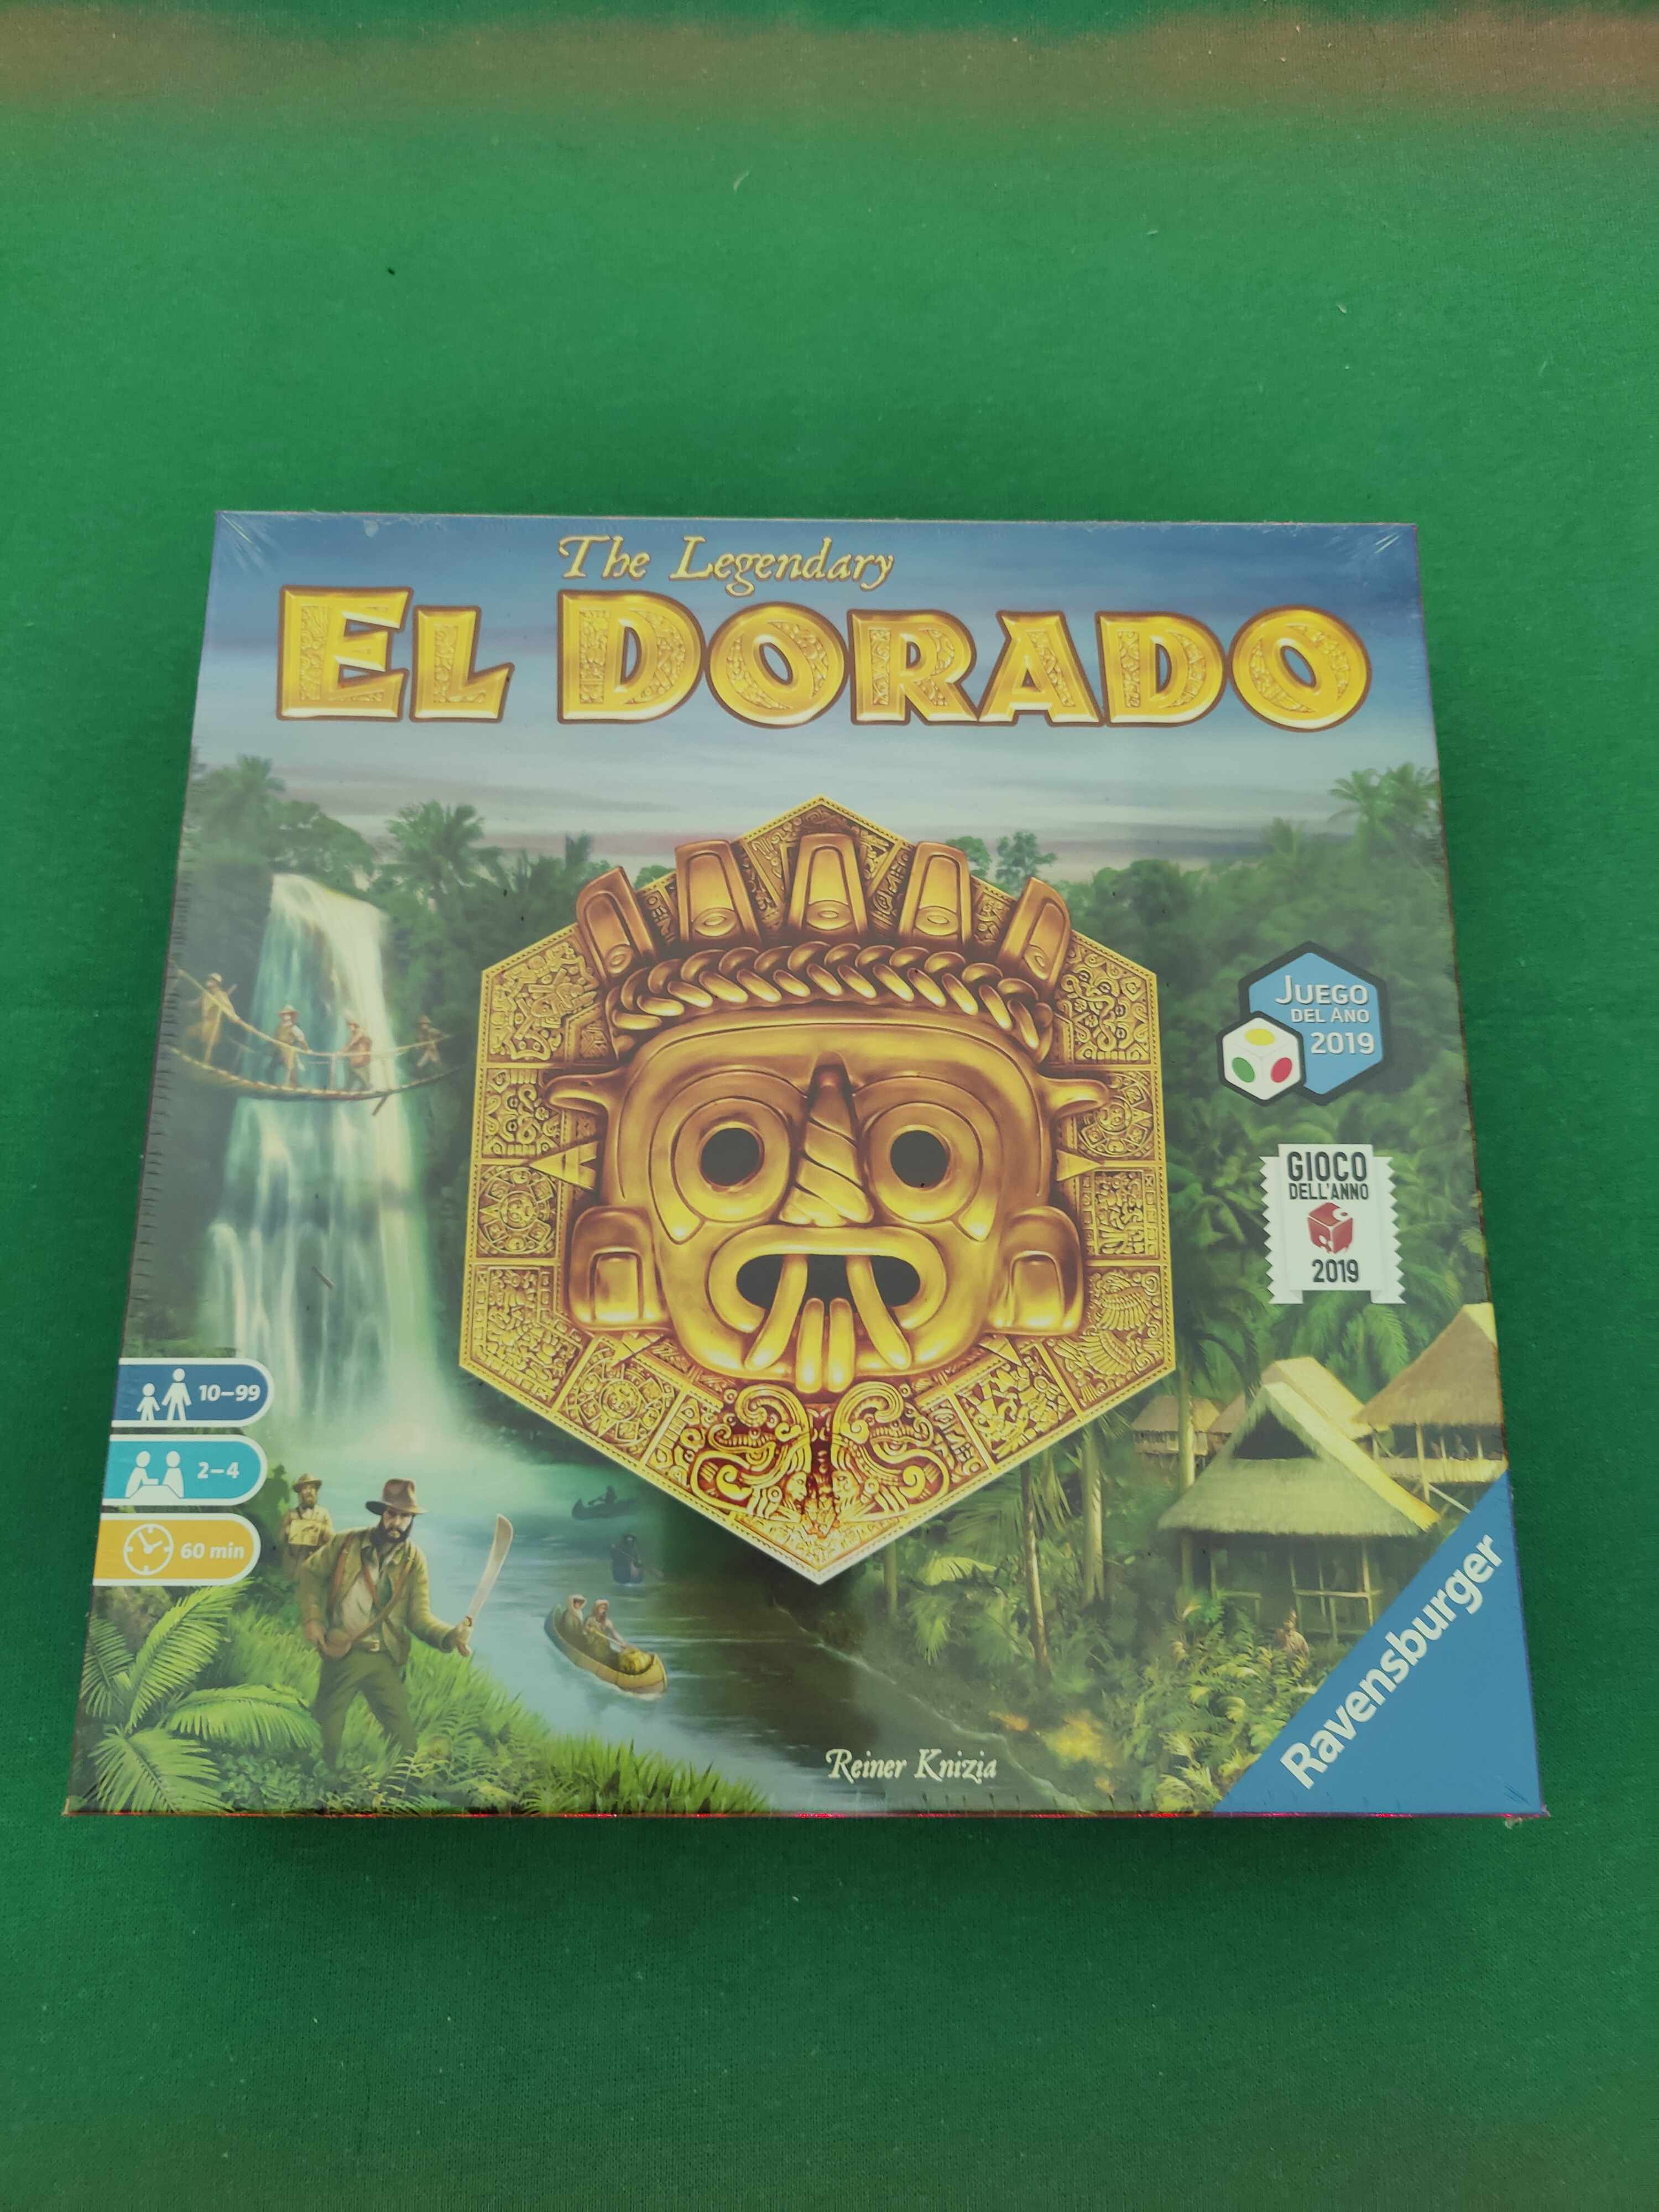 The Legendary El Dorado